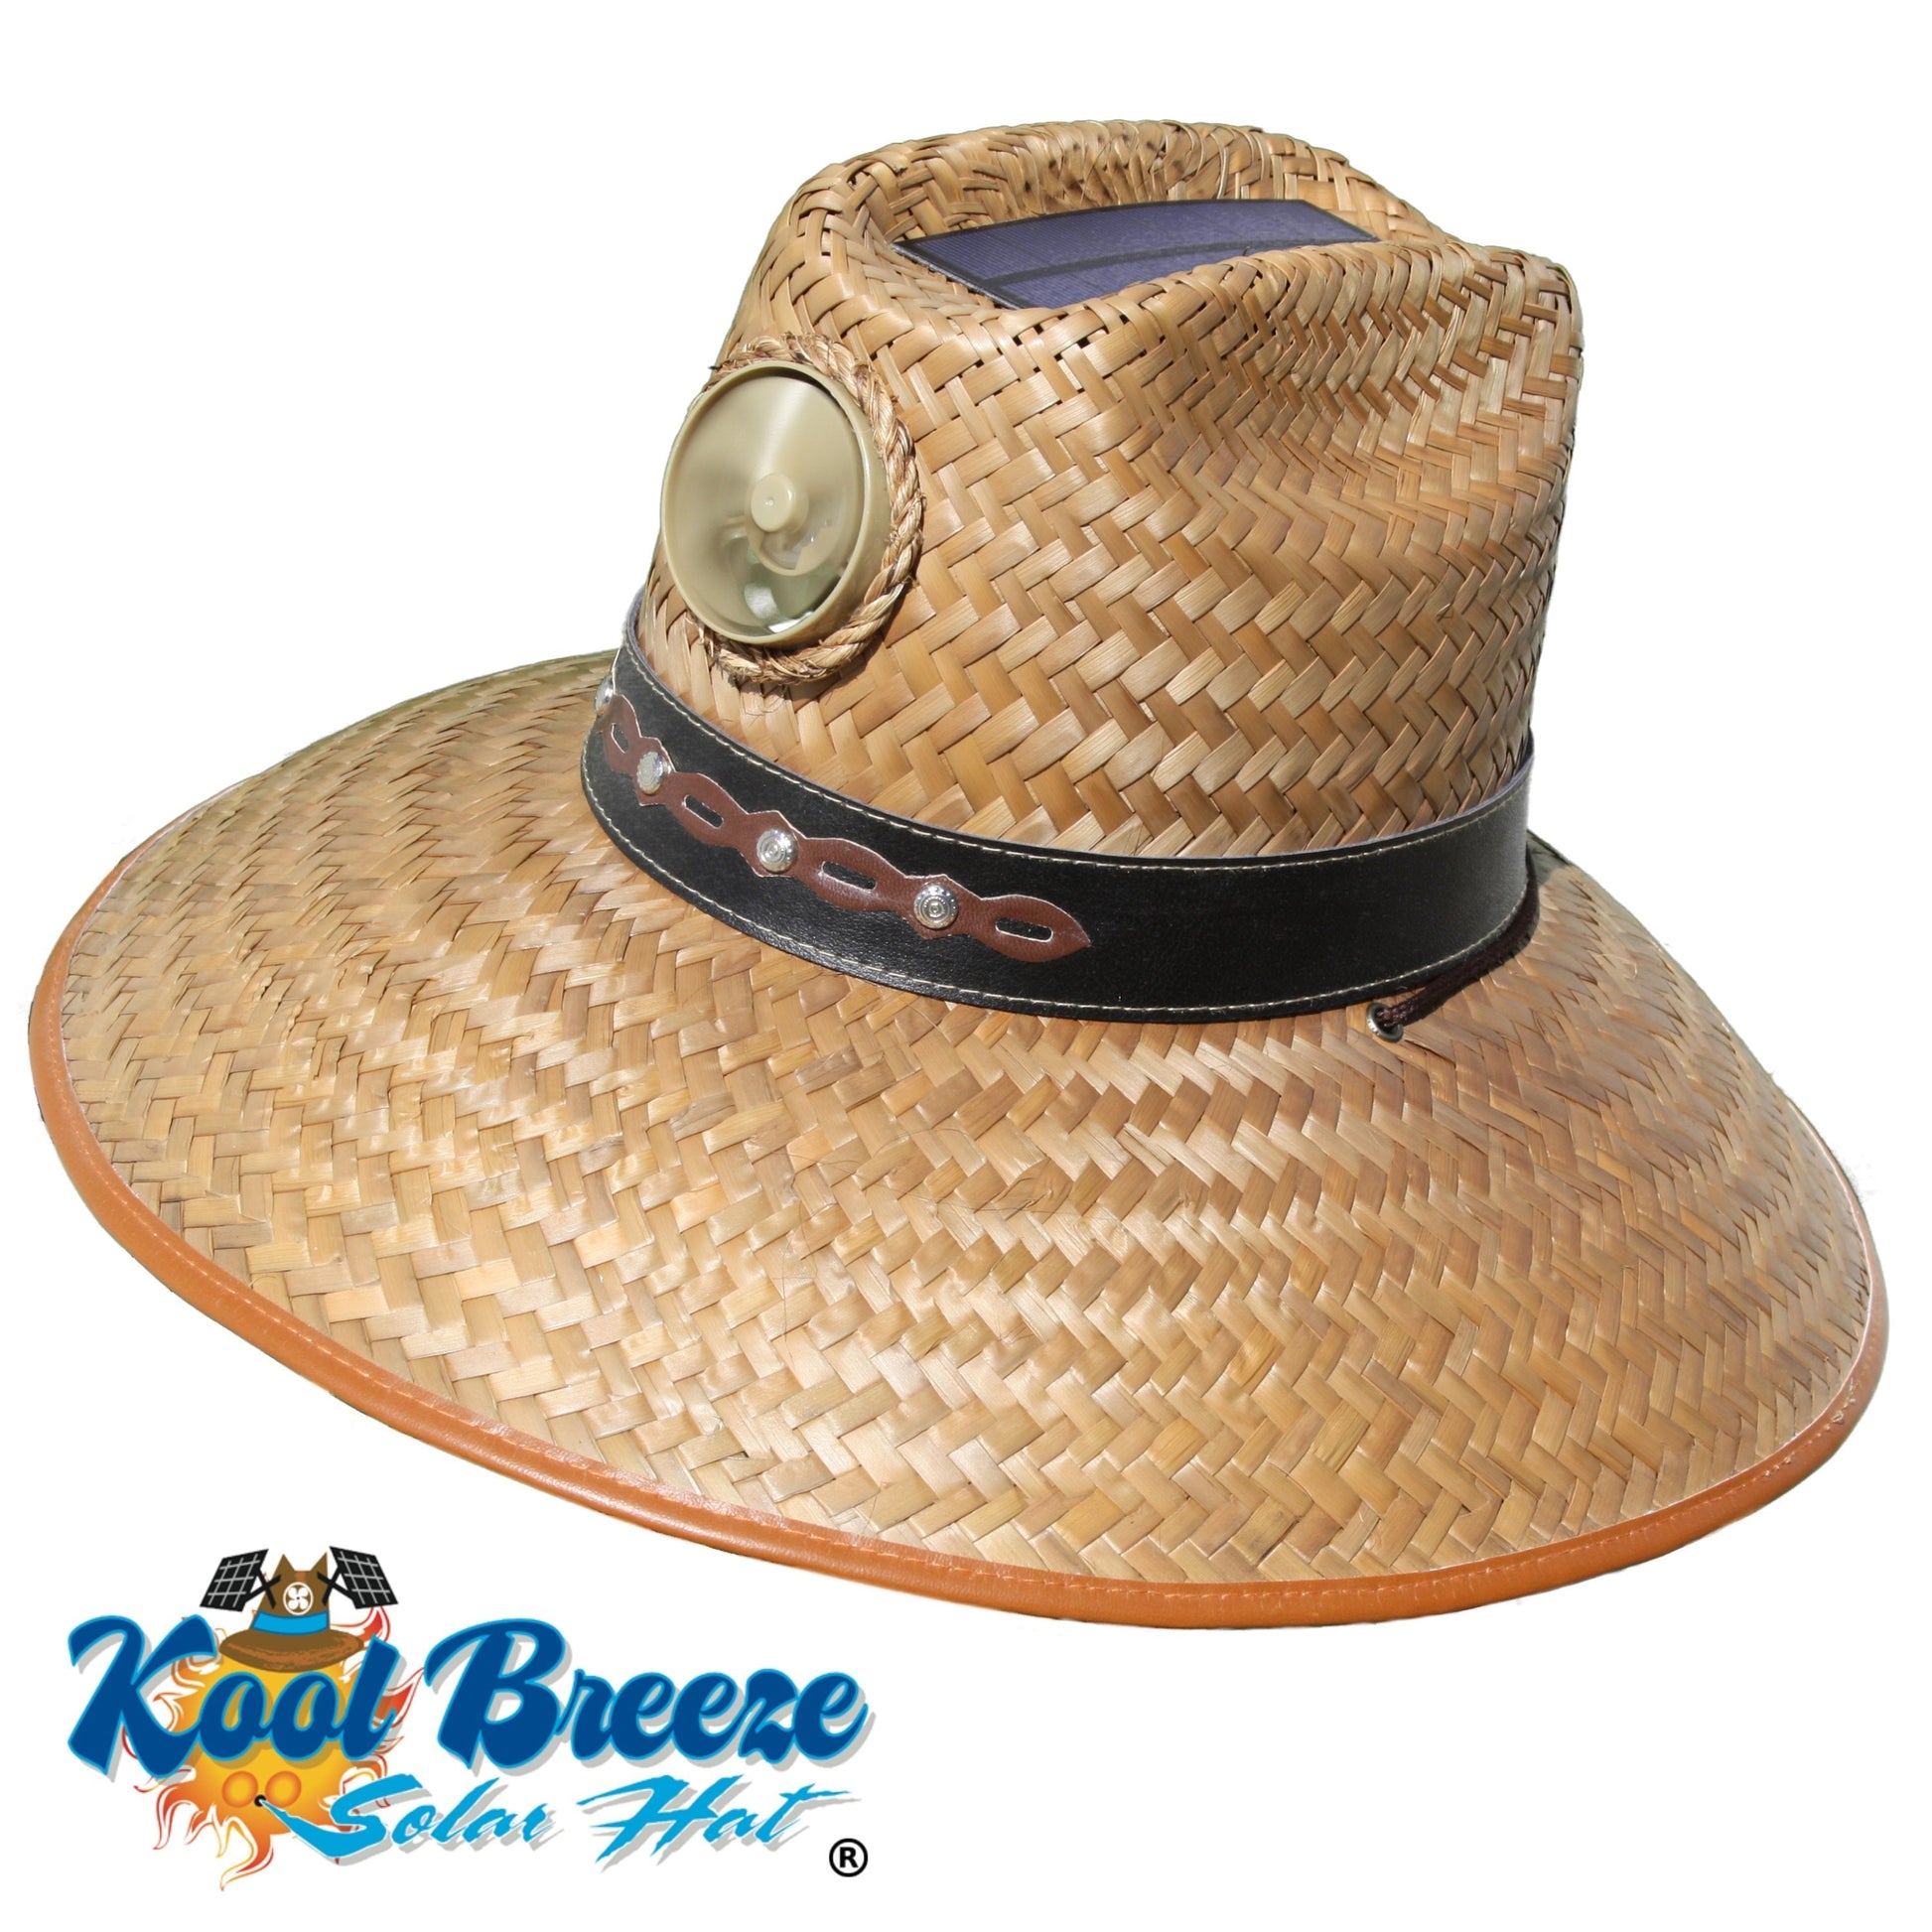 Kool Breeze Solar Men's Thurman Straw Hat (Band) – Kool Breeze Solar Hats